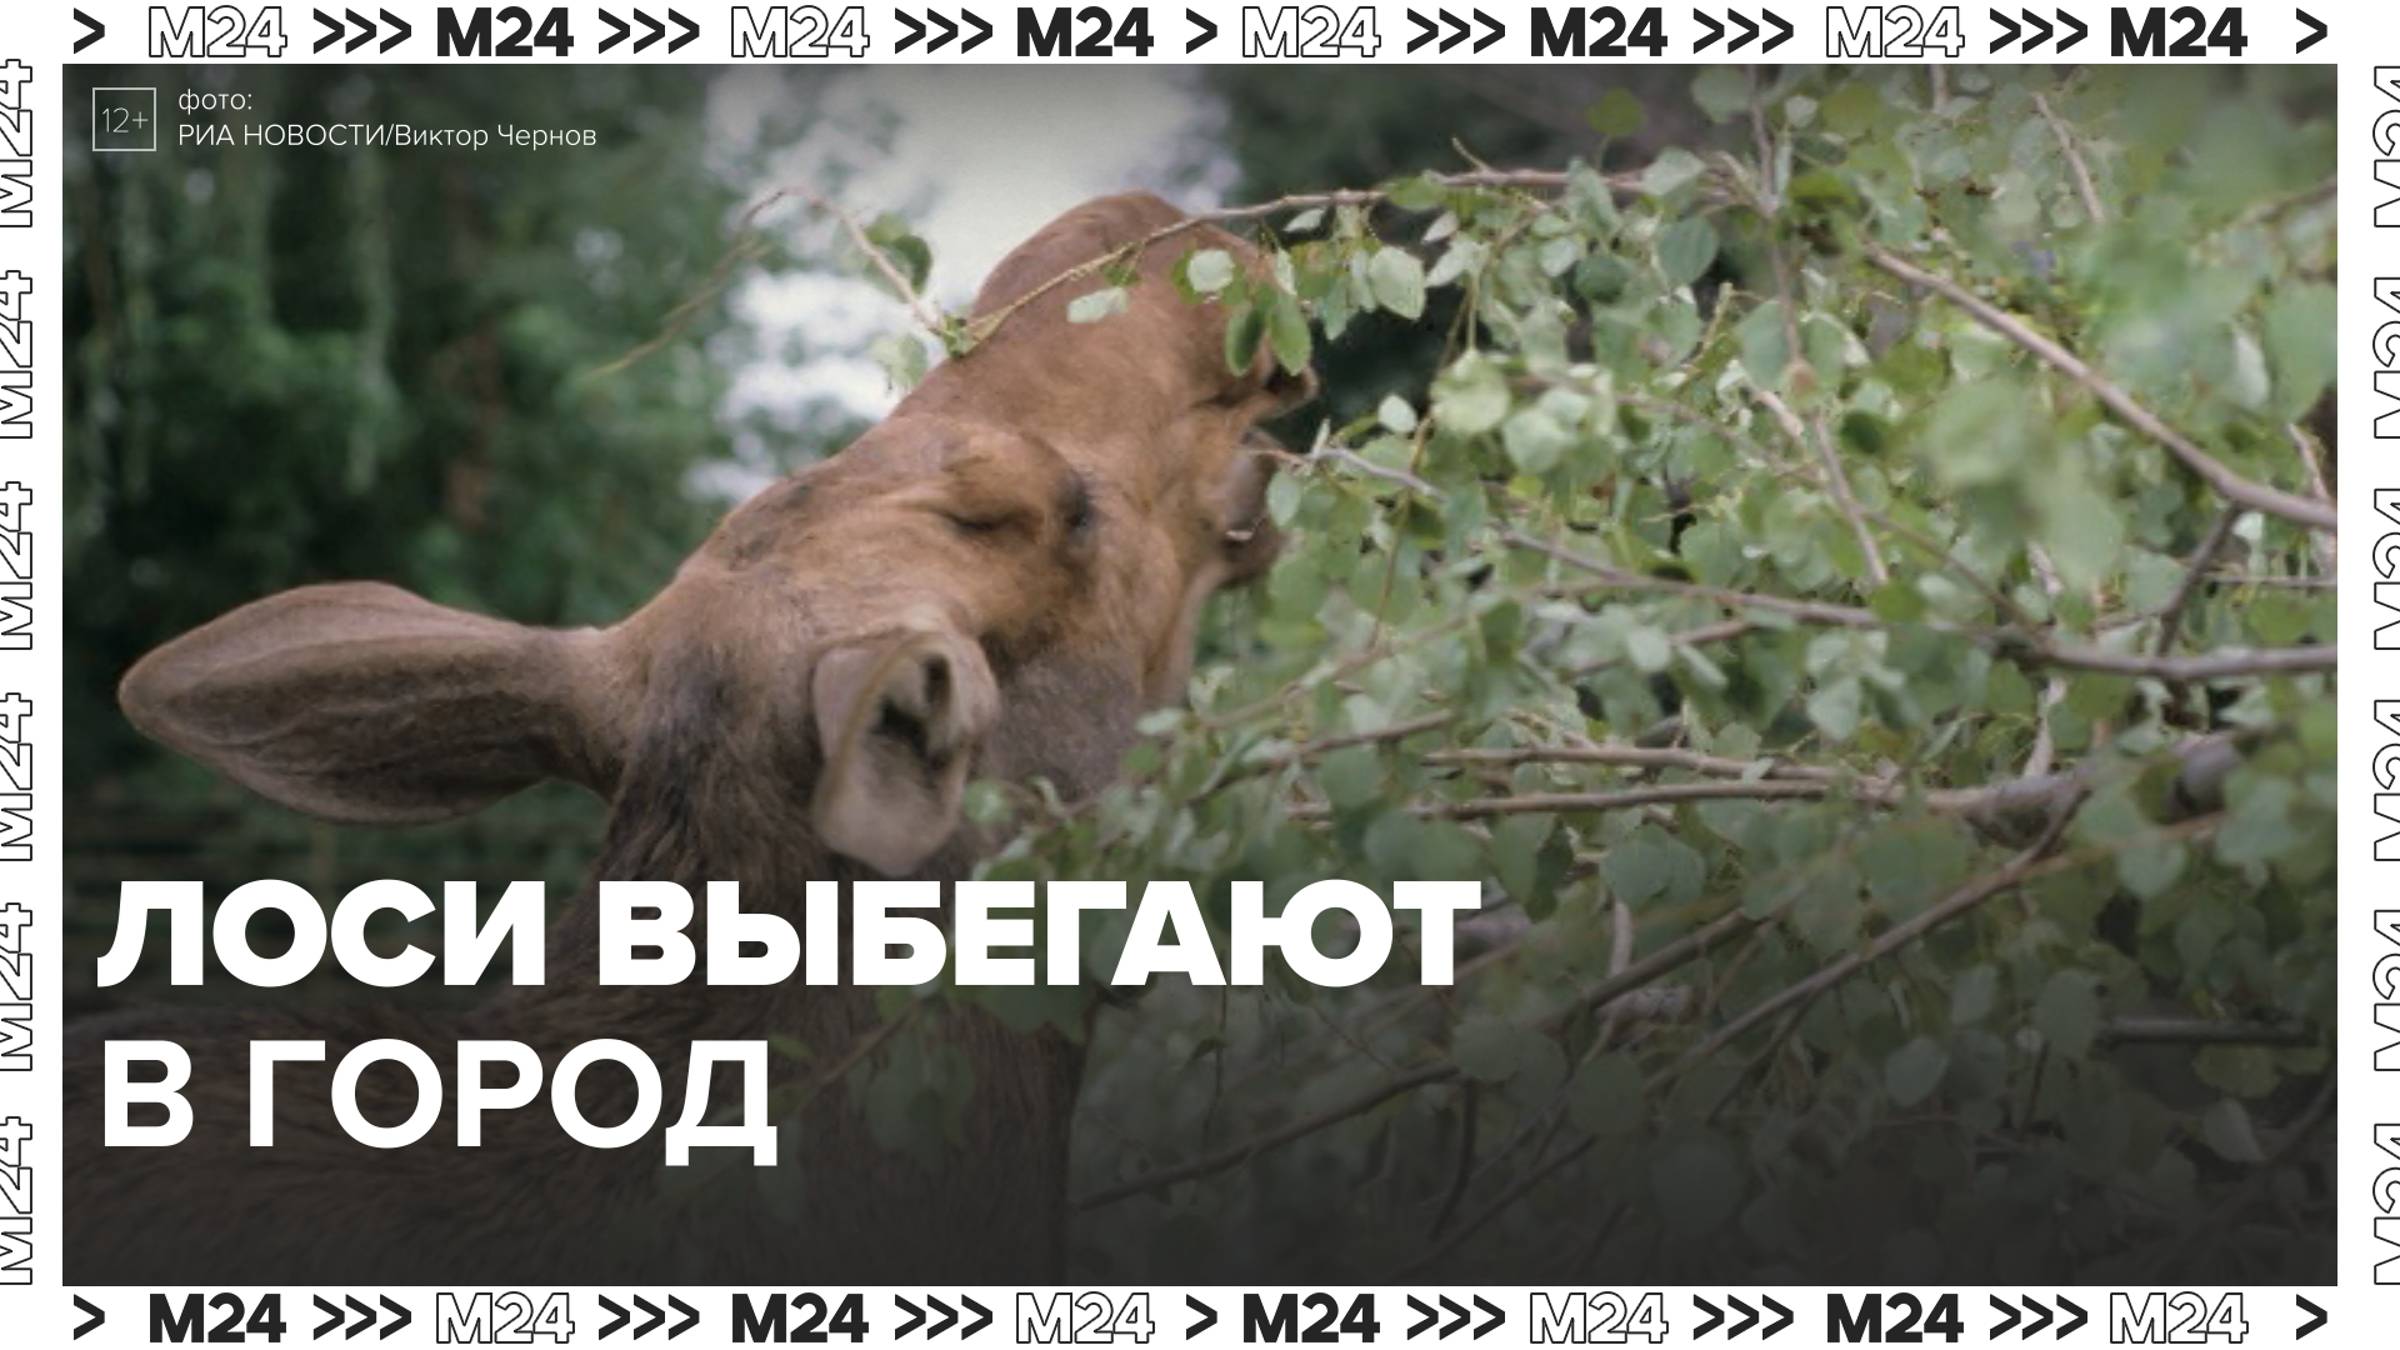 Перепуганного лося заметили в Химках — Москва24|Контент